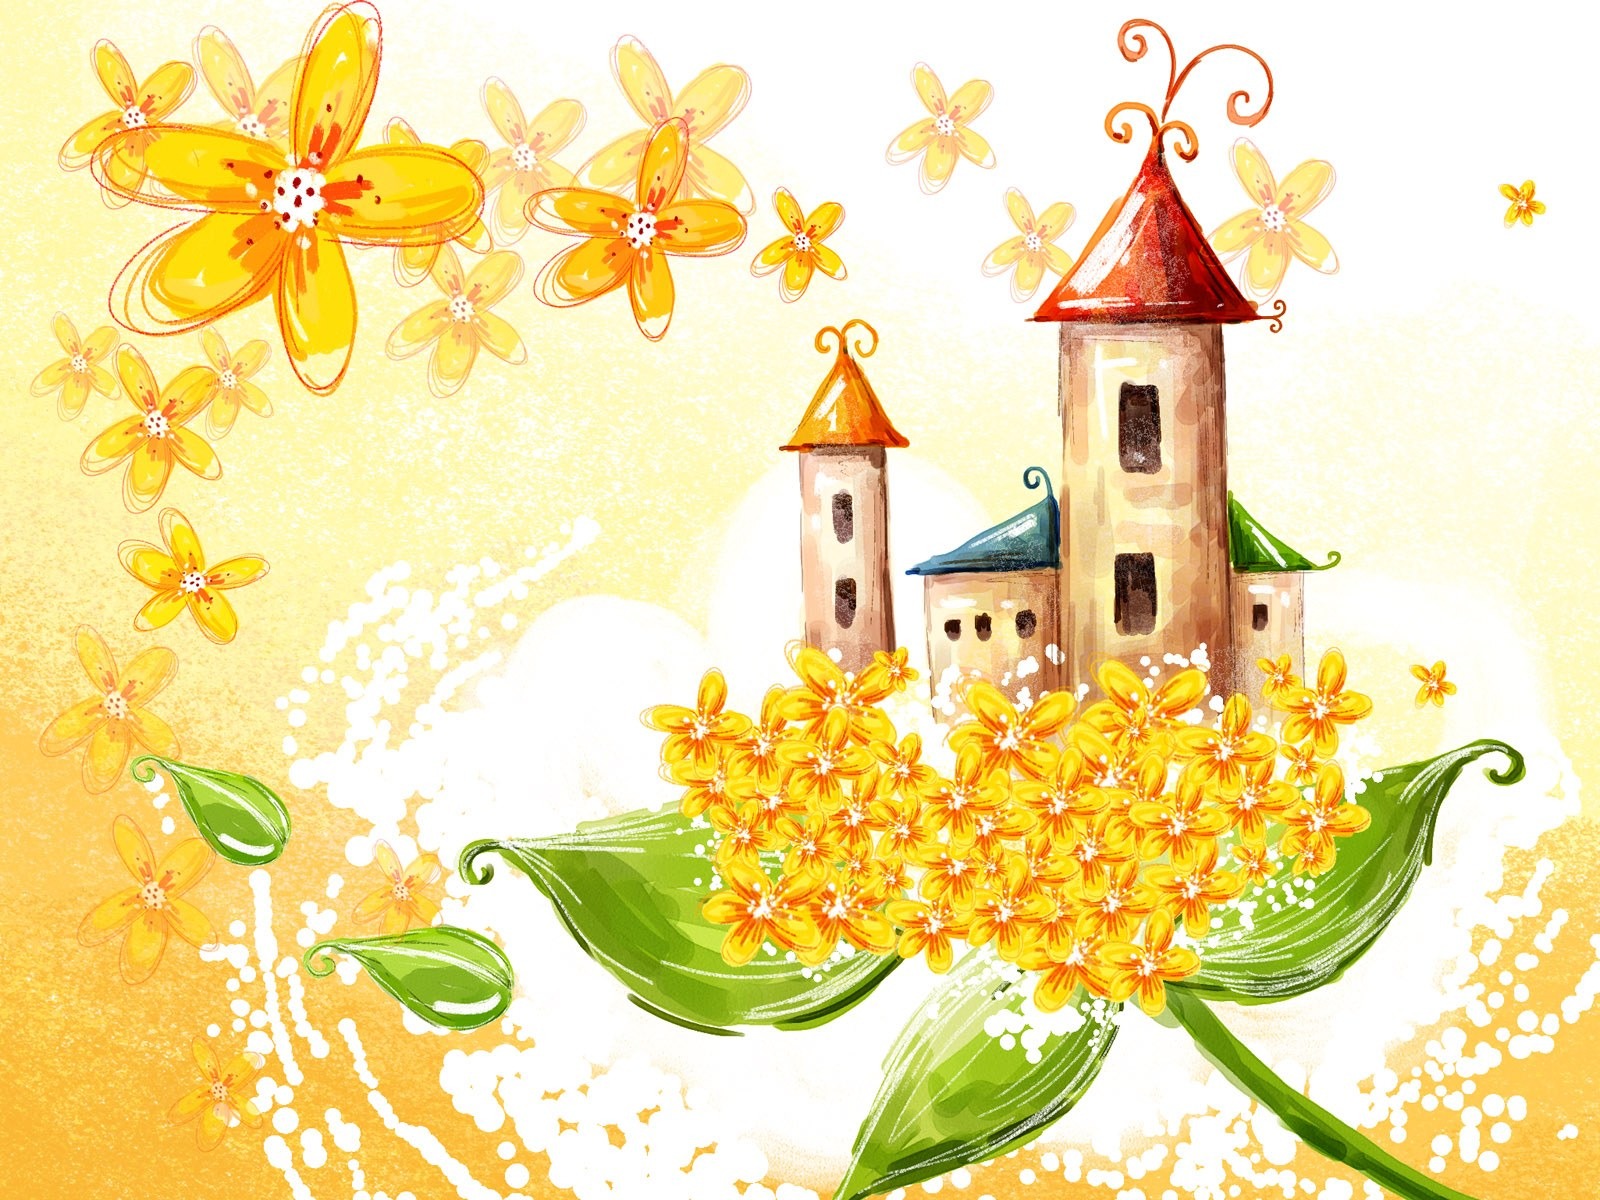 Floral wallpaper illustration design #27 - 1600x1200